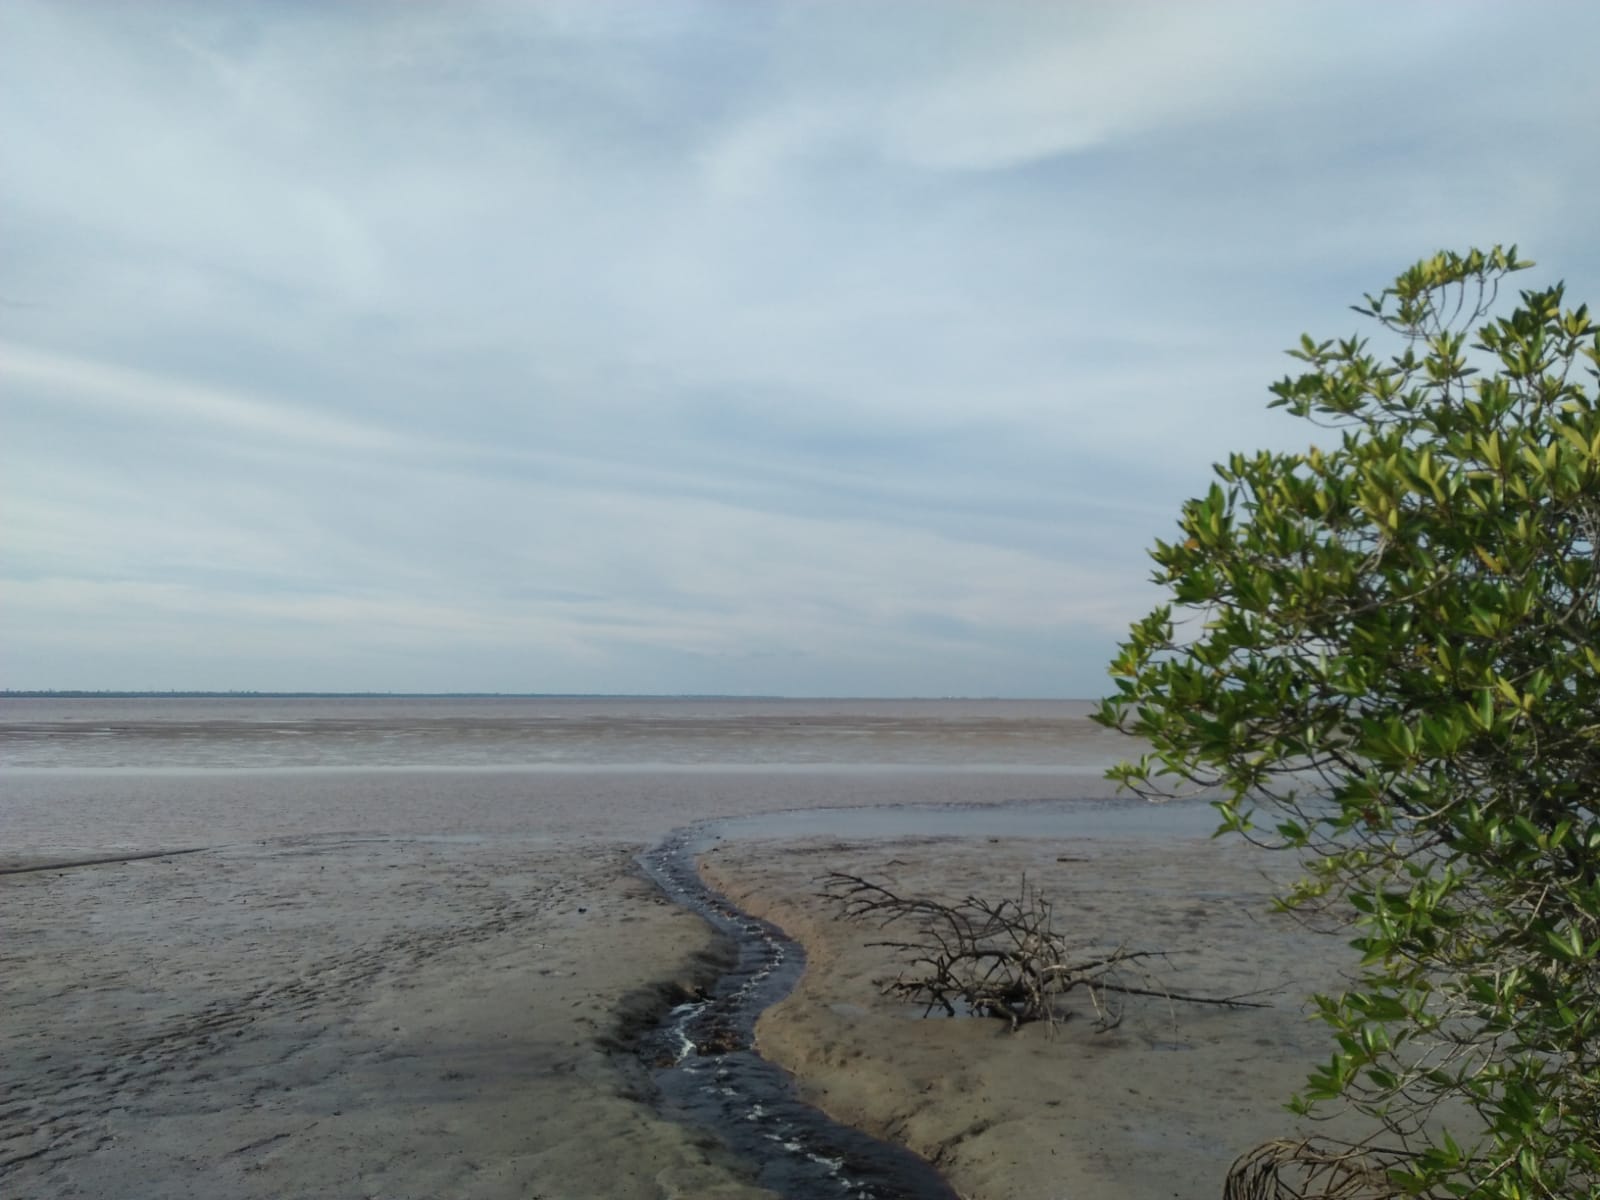 Potensi Wisata Bahari di Siak: Pantai Beting dan Hutan Mangrov Tanjung Layang